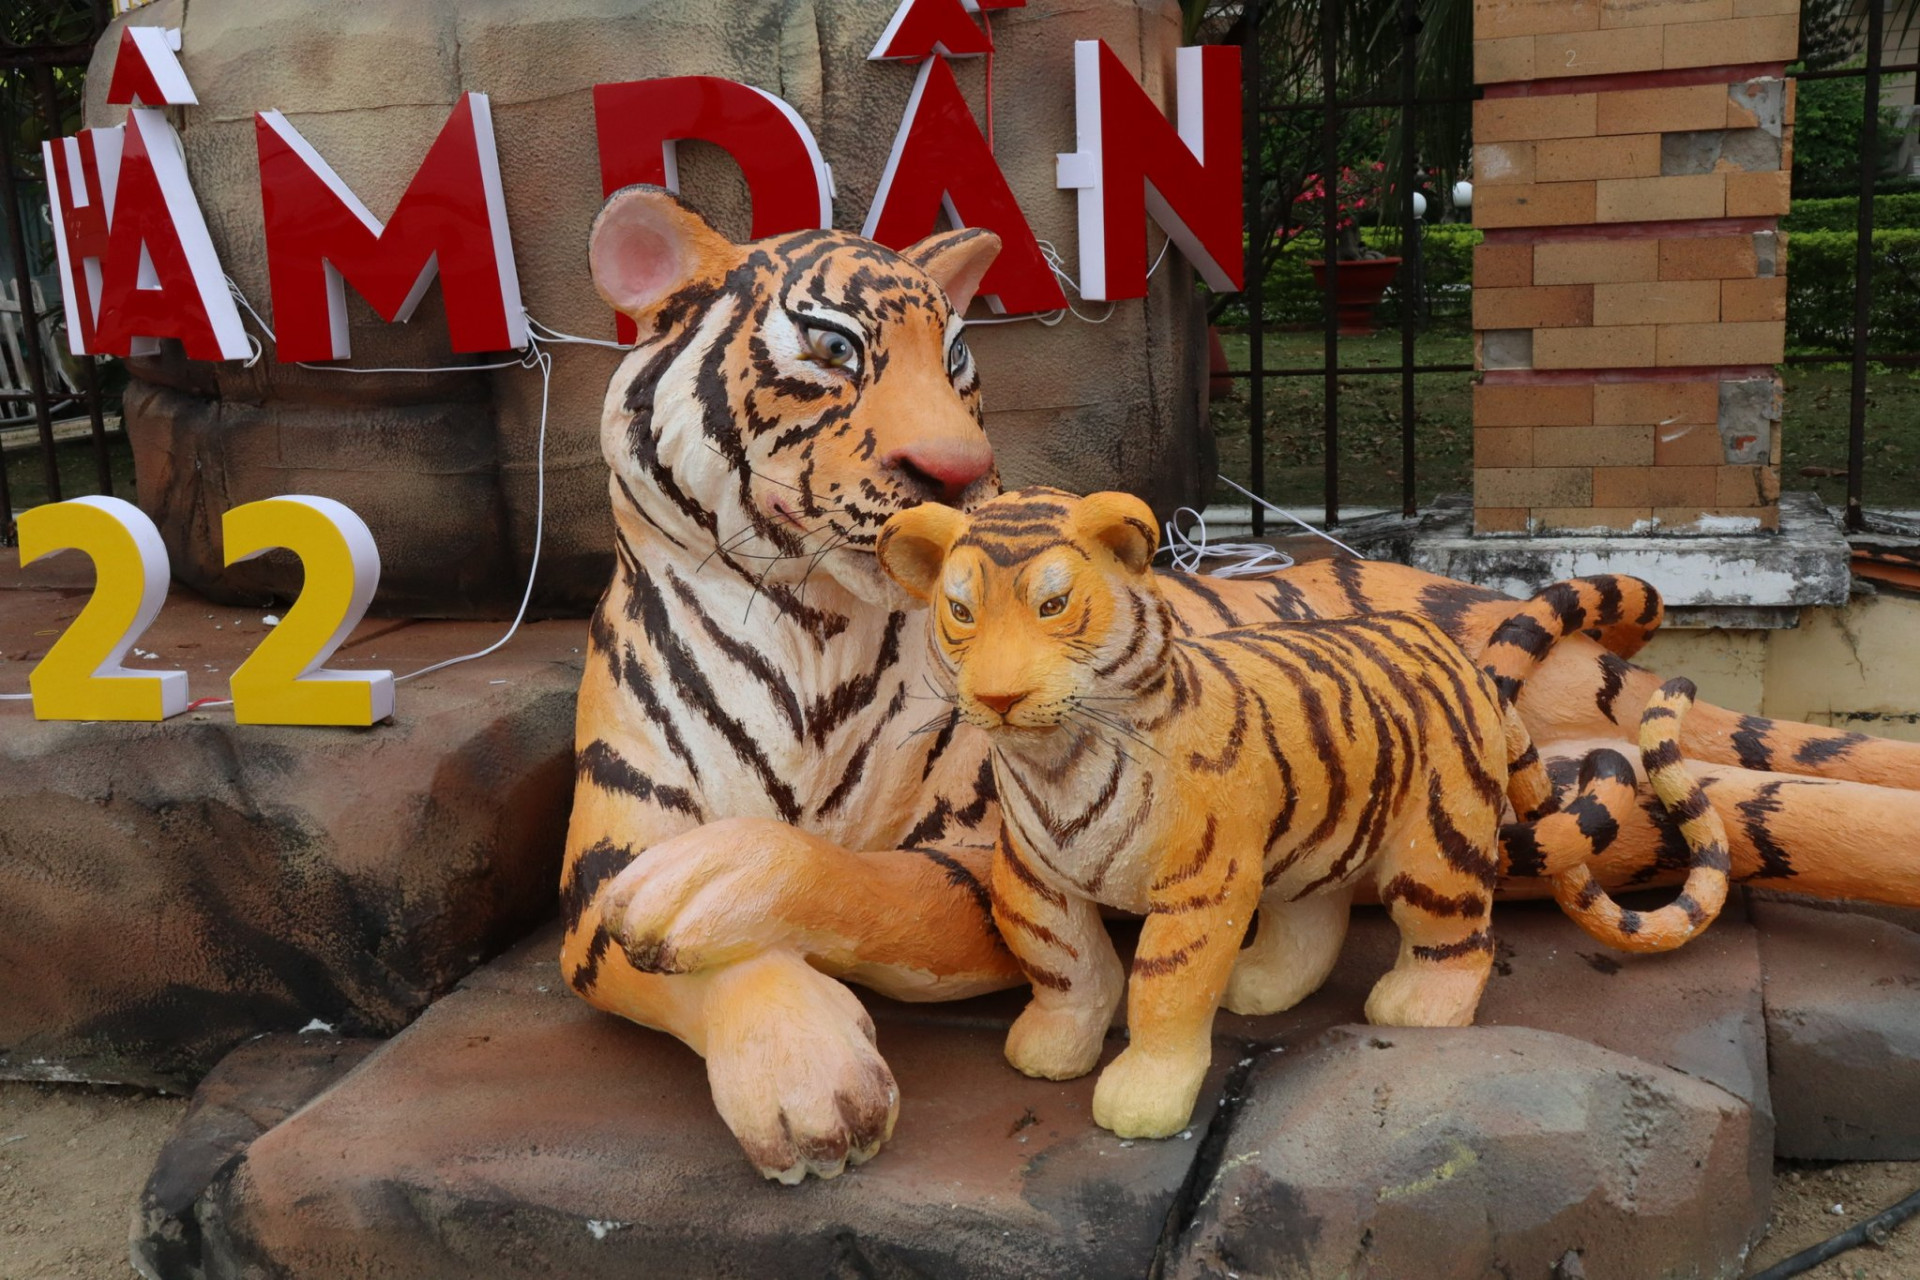 Mẹ con nhà hổ ở tiểu cảnh chúc mừng năm mới Nhâm Dần 2022 ở gần Quảng trường 2-4 Nha Trang